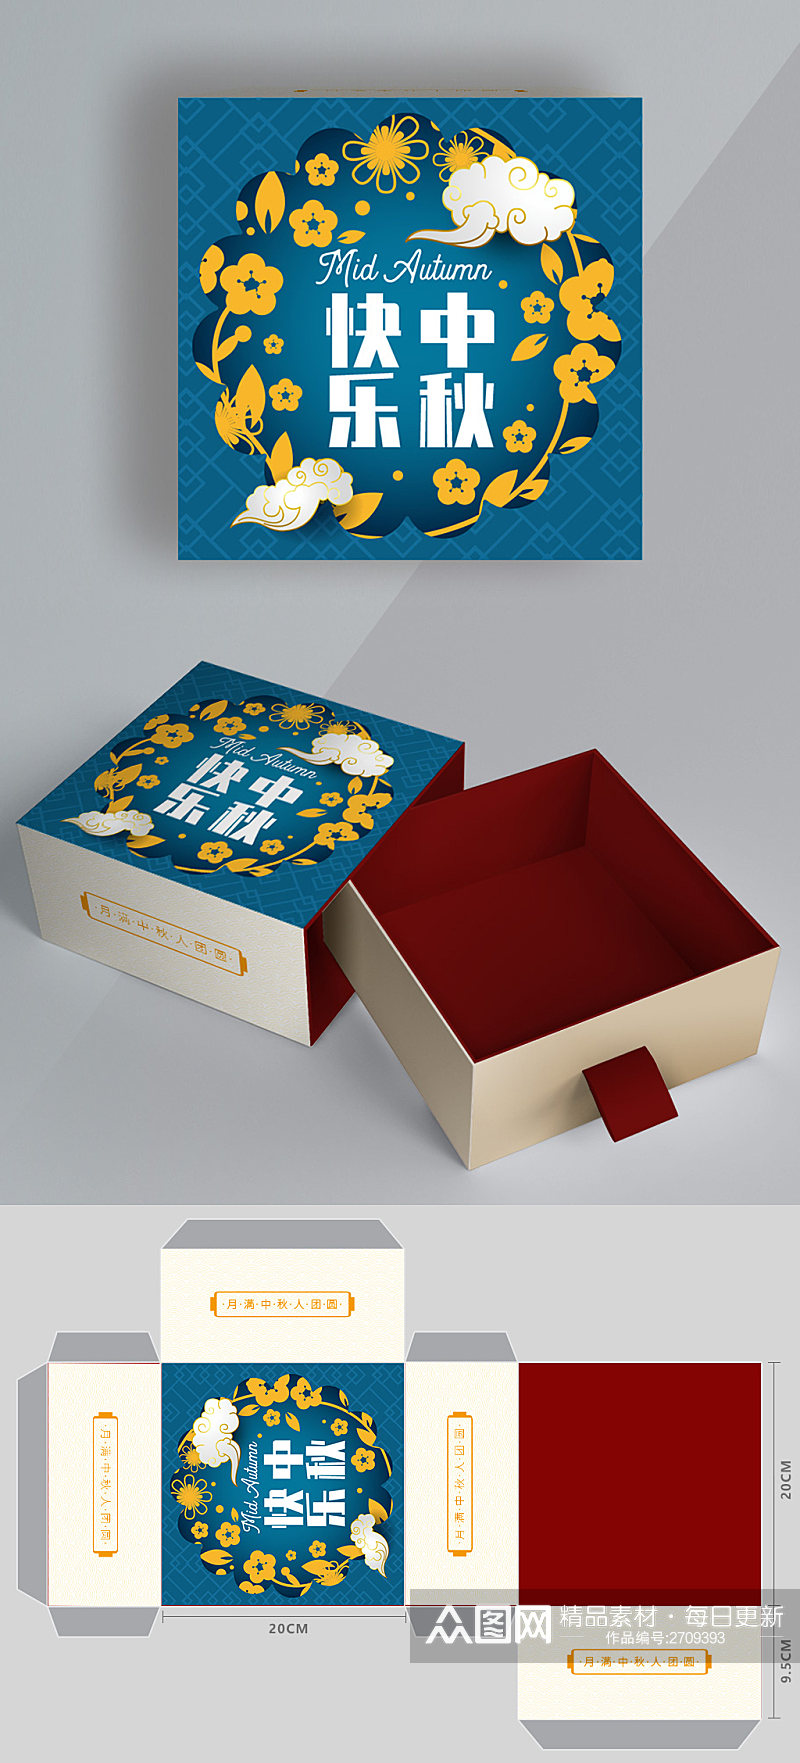 中秋节精美月兔插画月饼礼盒包装设计素材